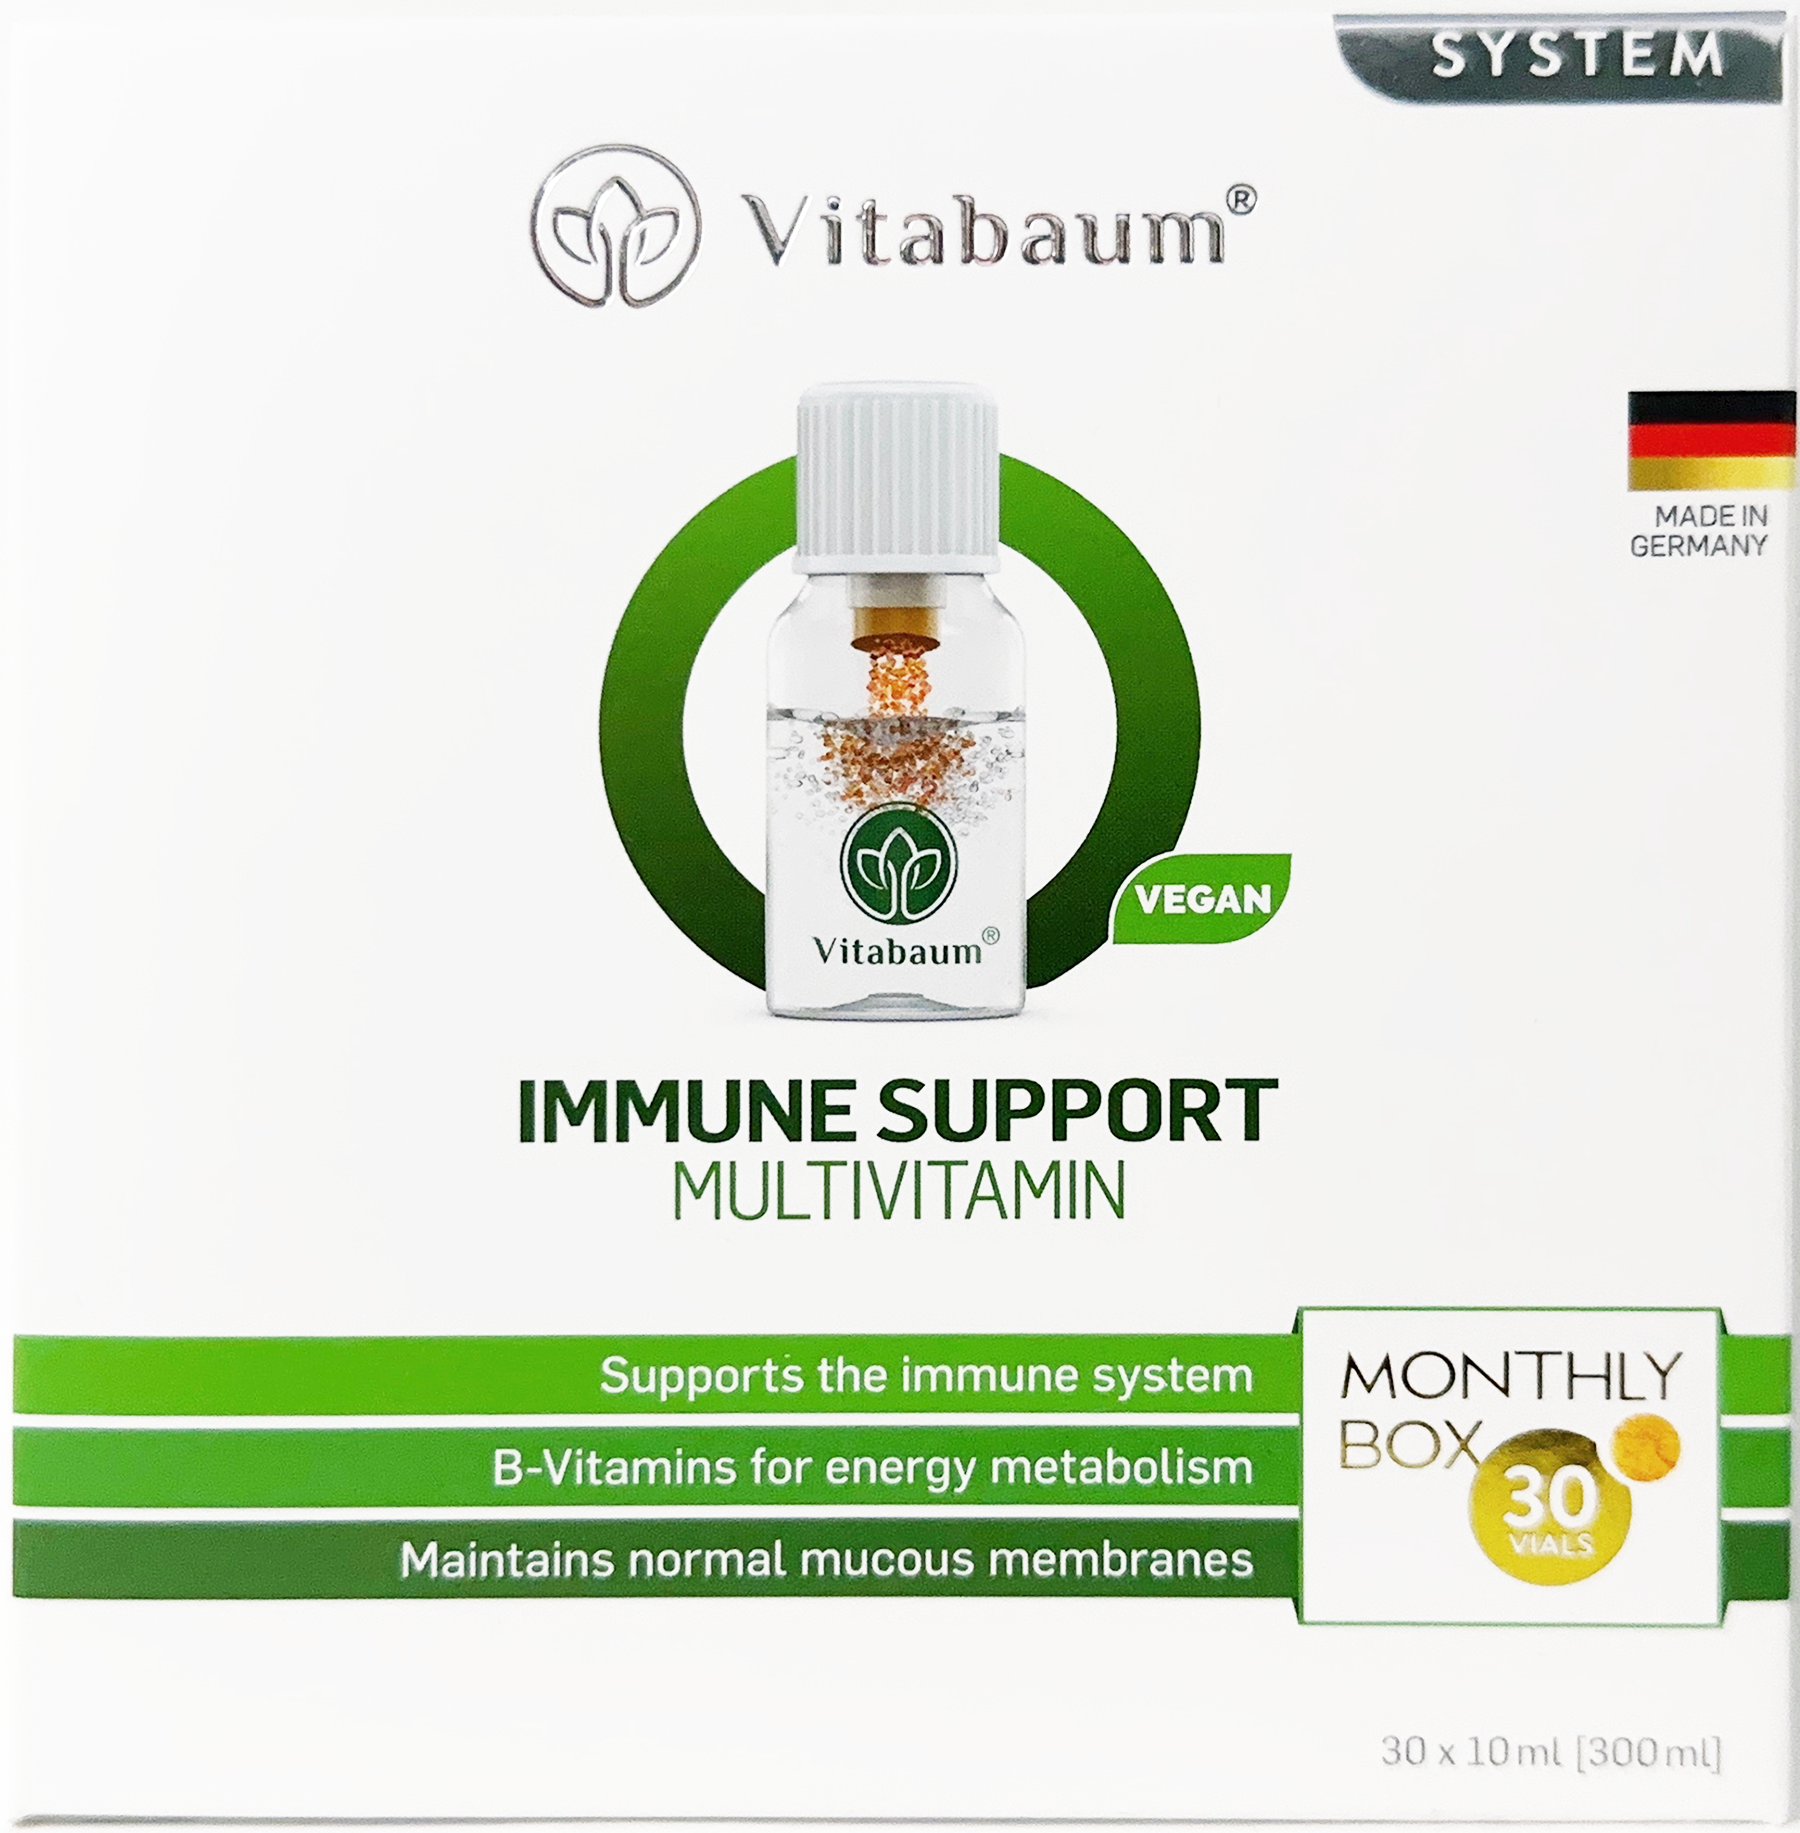 Vitabaum® Immune Support - Dietary supplement with 15 vitamins & minerals